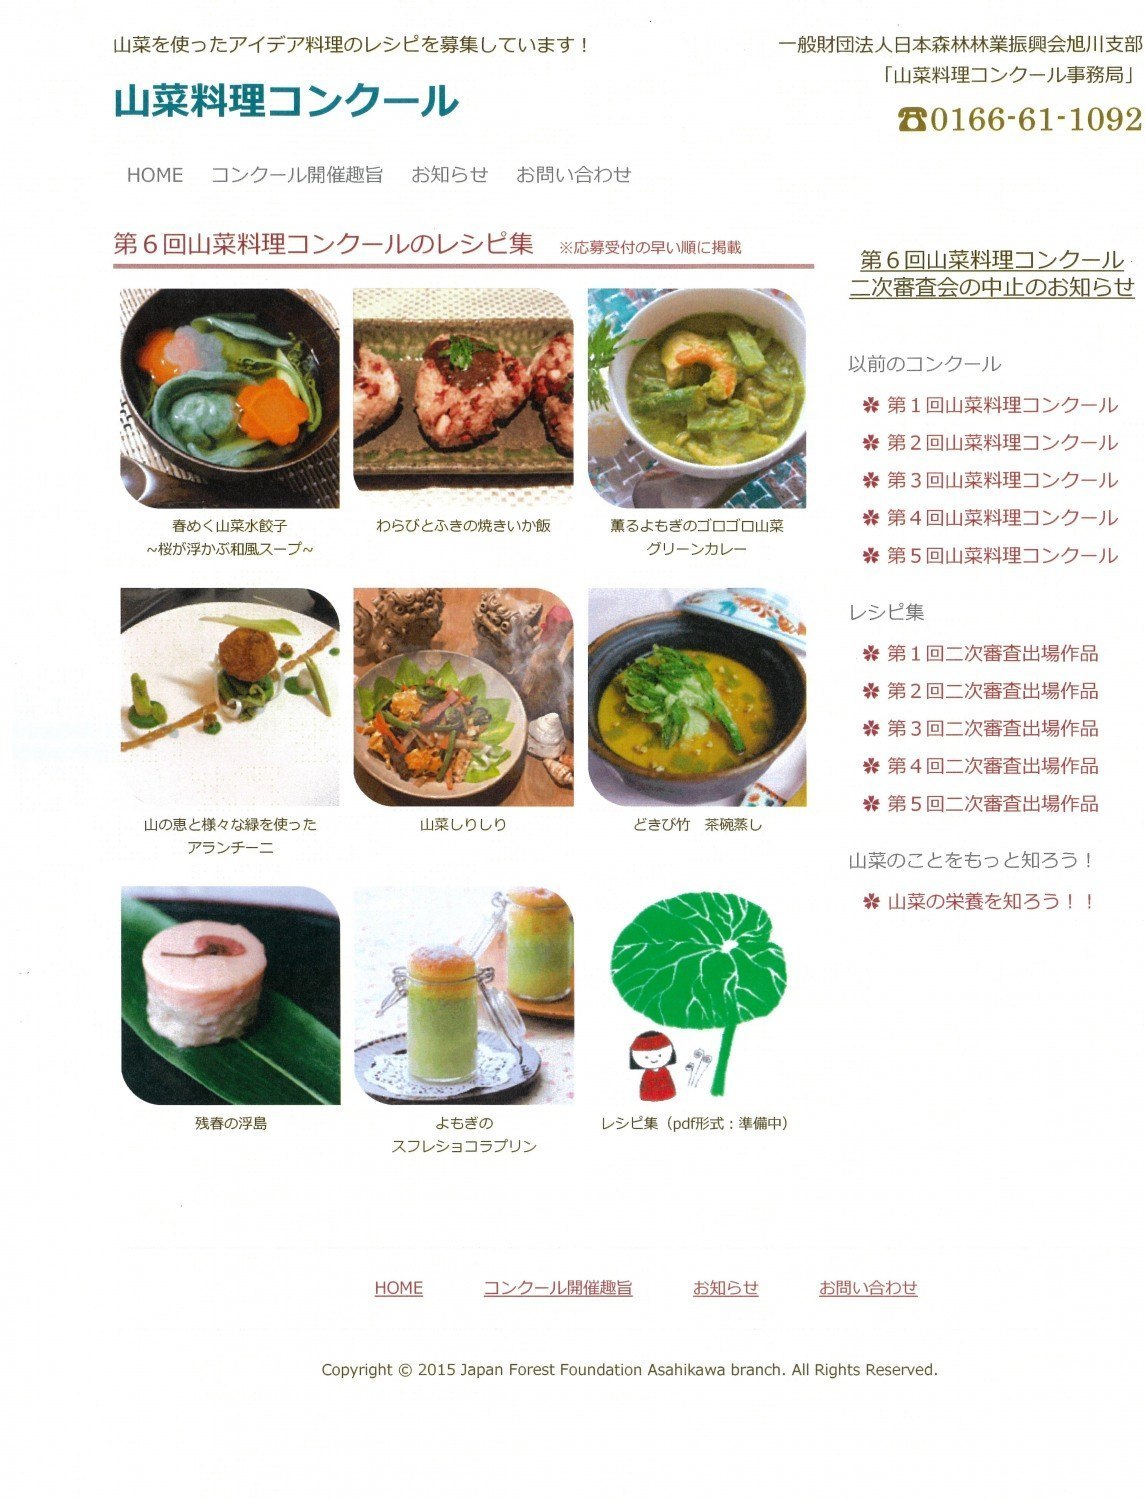 山菜料理コンクールの優秀レシピを公表しました お知らせ 掲示板 ライナーウェブ